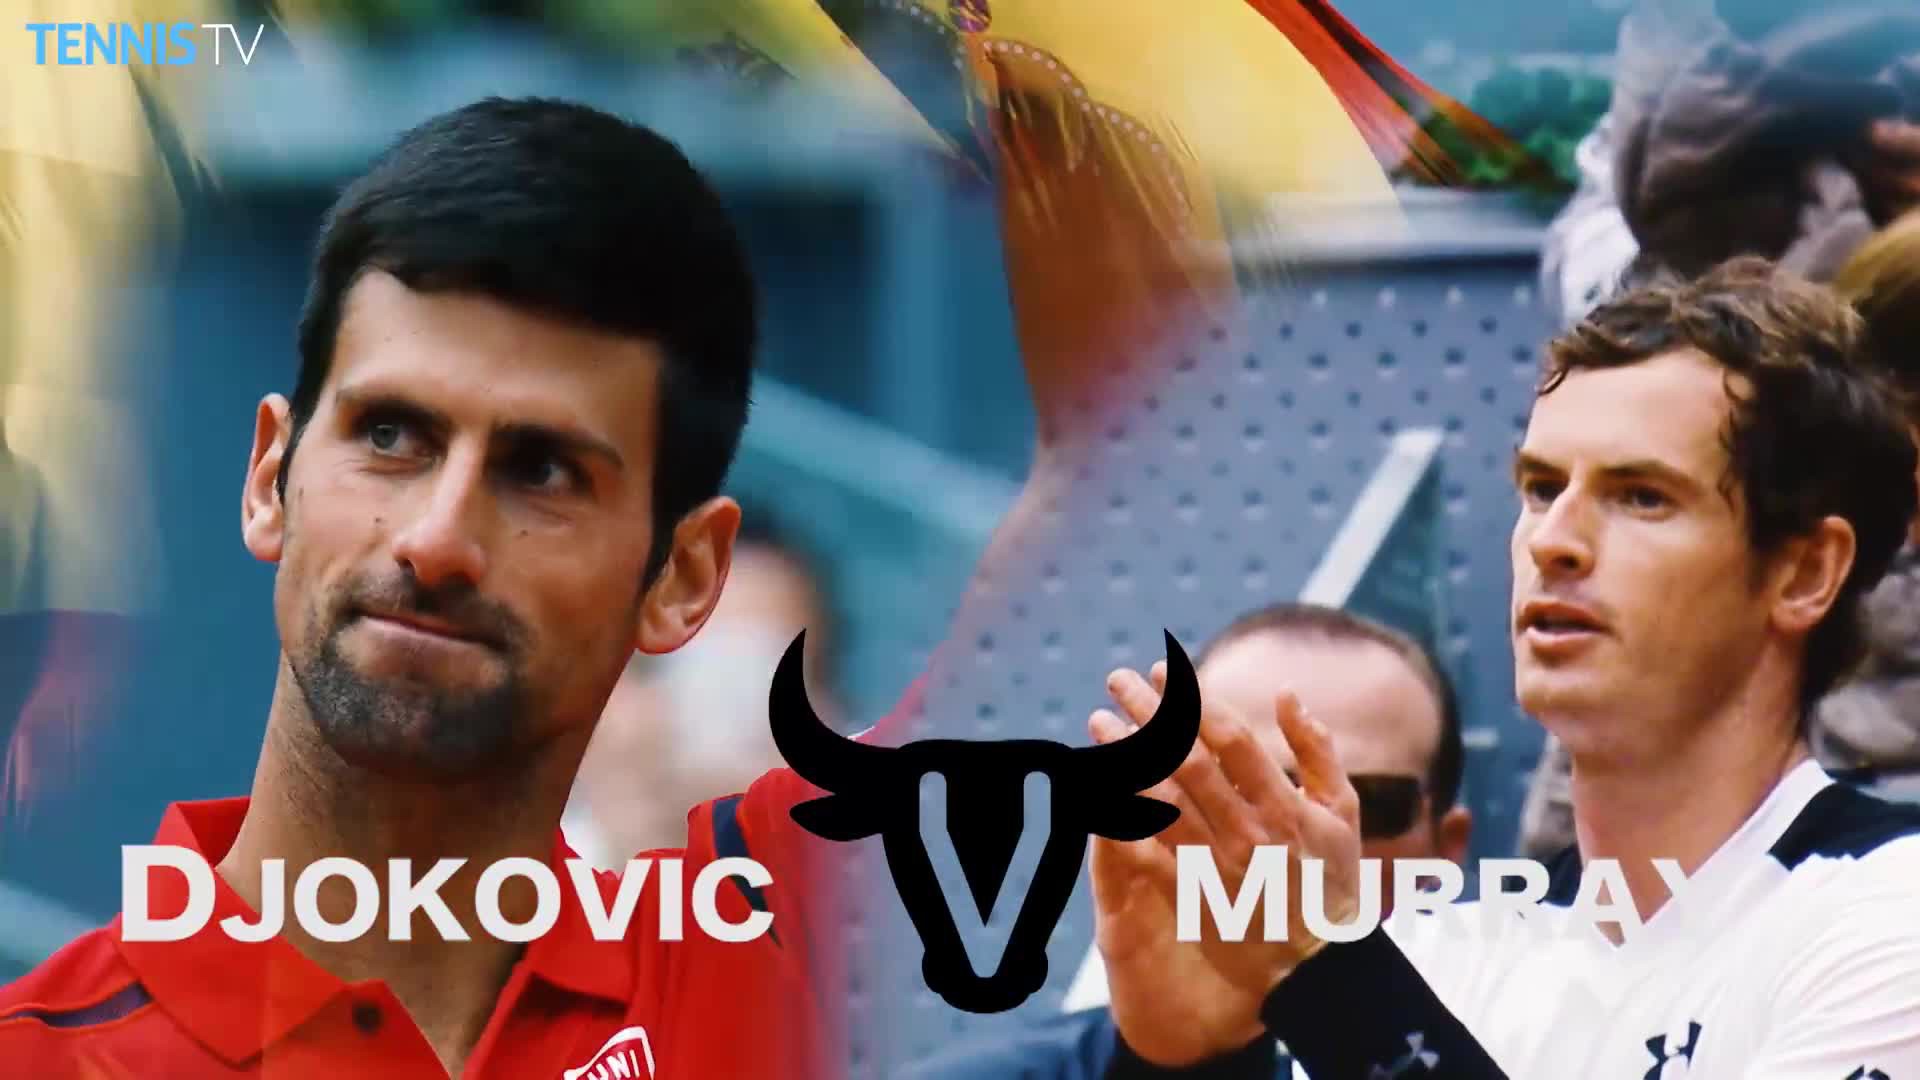 Trận đấu đầu tiên giữa Djokovic và Murray diễn ra cách đây 10 năm tại Madrid